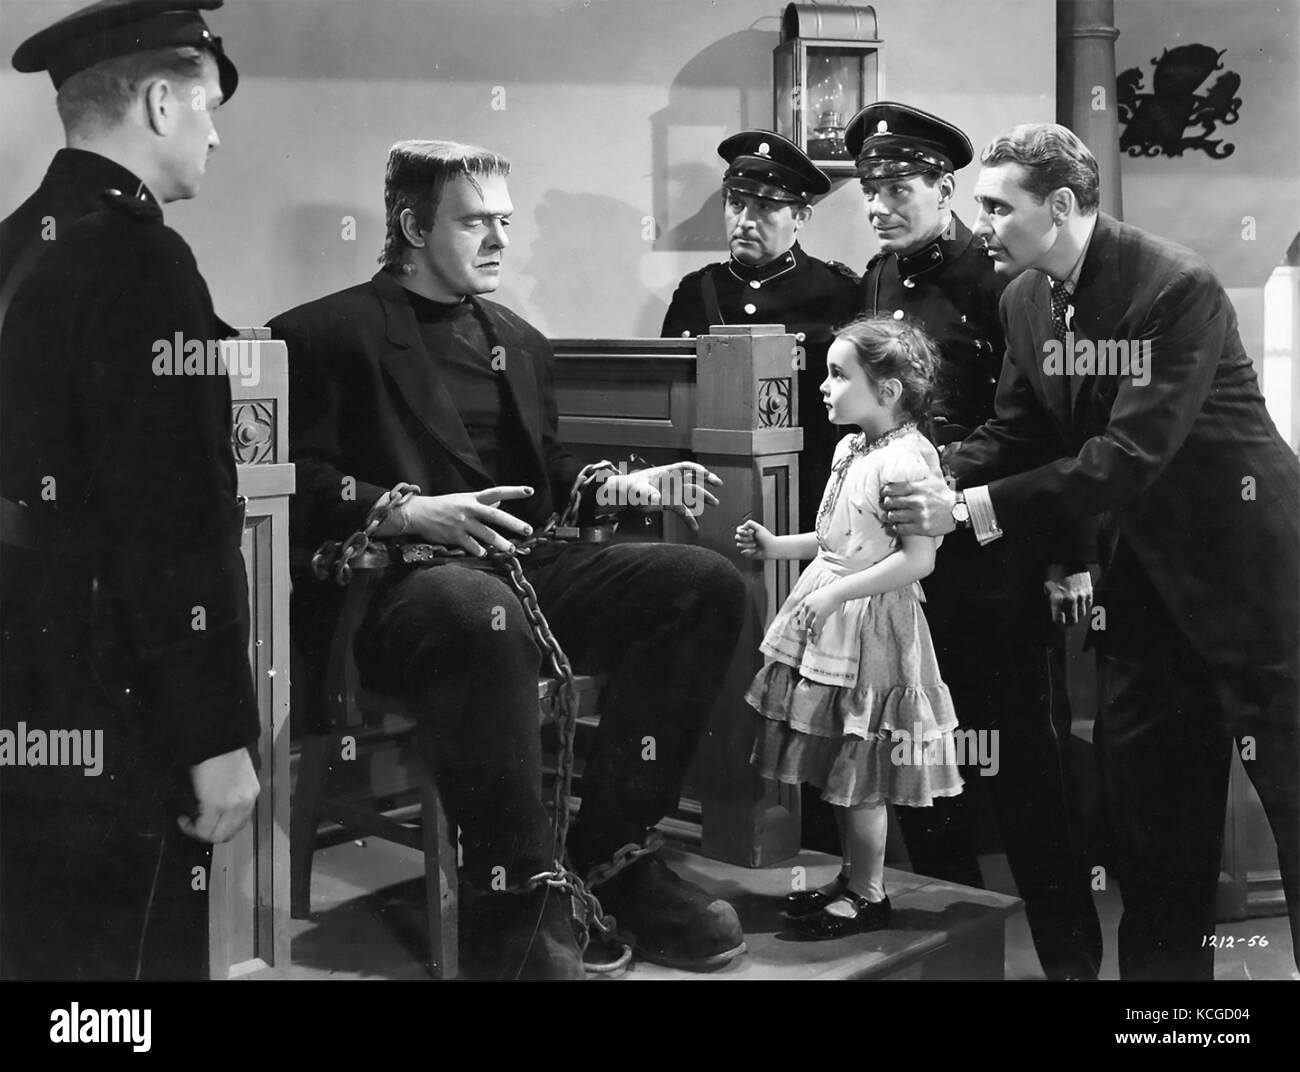 Le FANTÔME DE FRANKENSTEIN 1942 Universal Pictures film d'horreur avec Lon Chaney Jr comme le monstre ici dans la scène du procès Banque D'Images